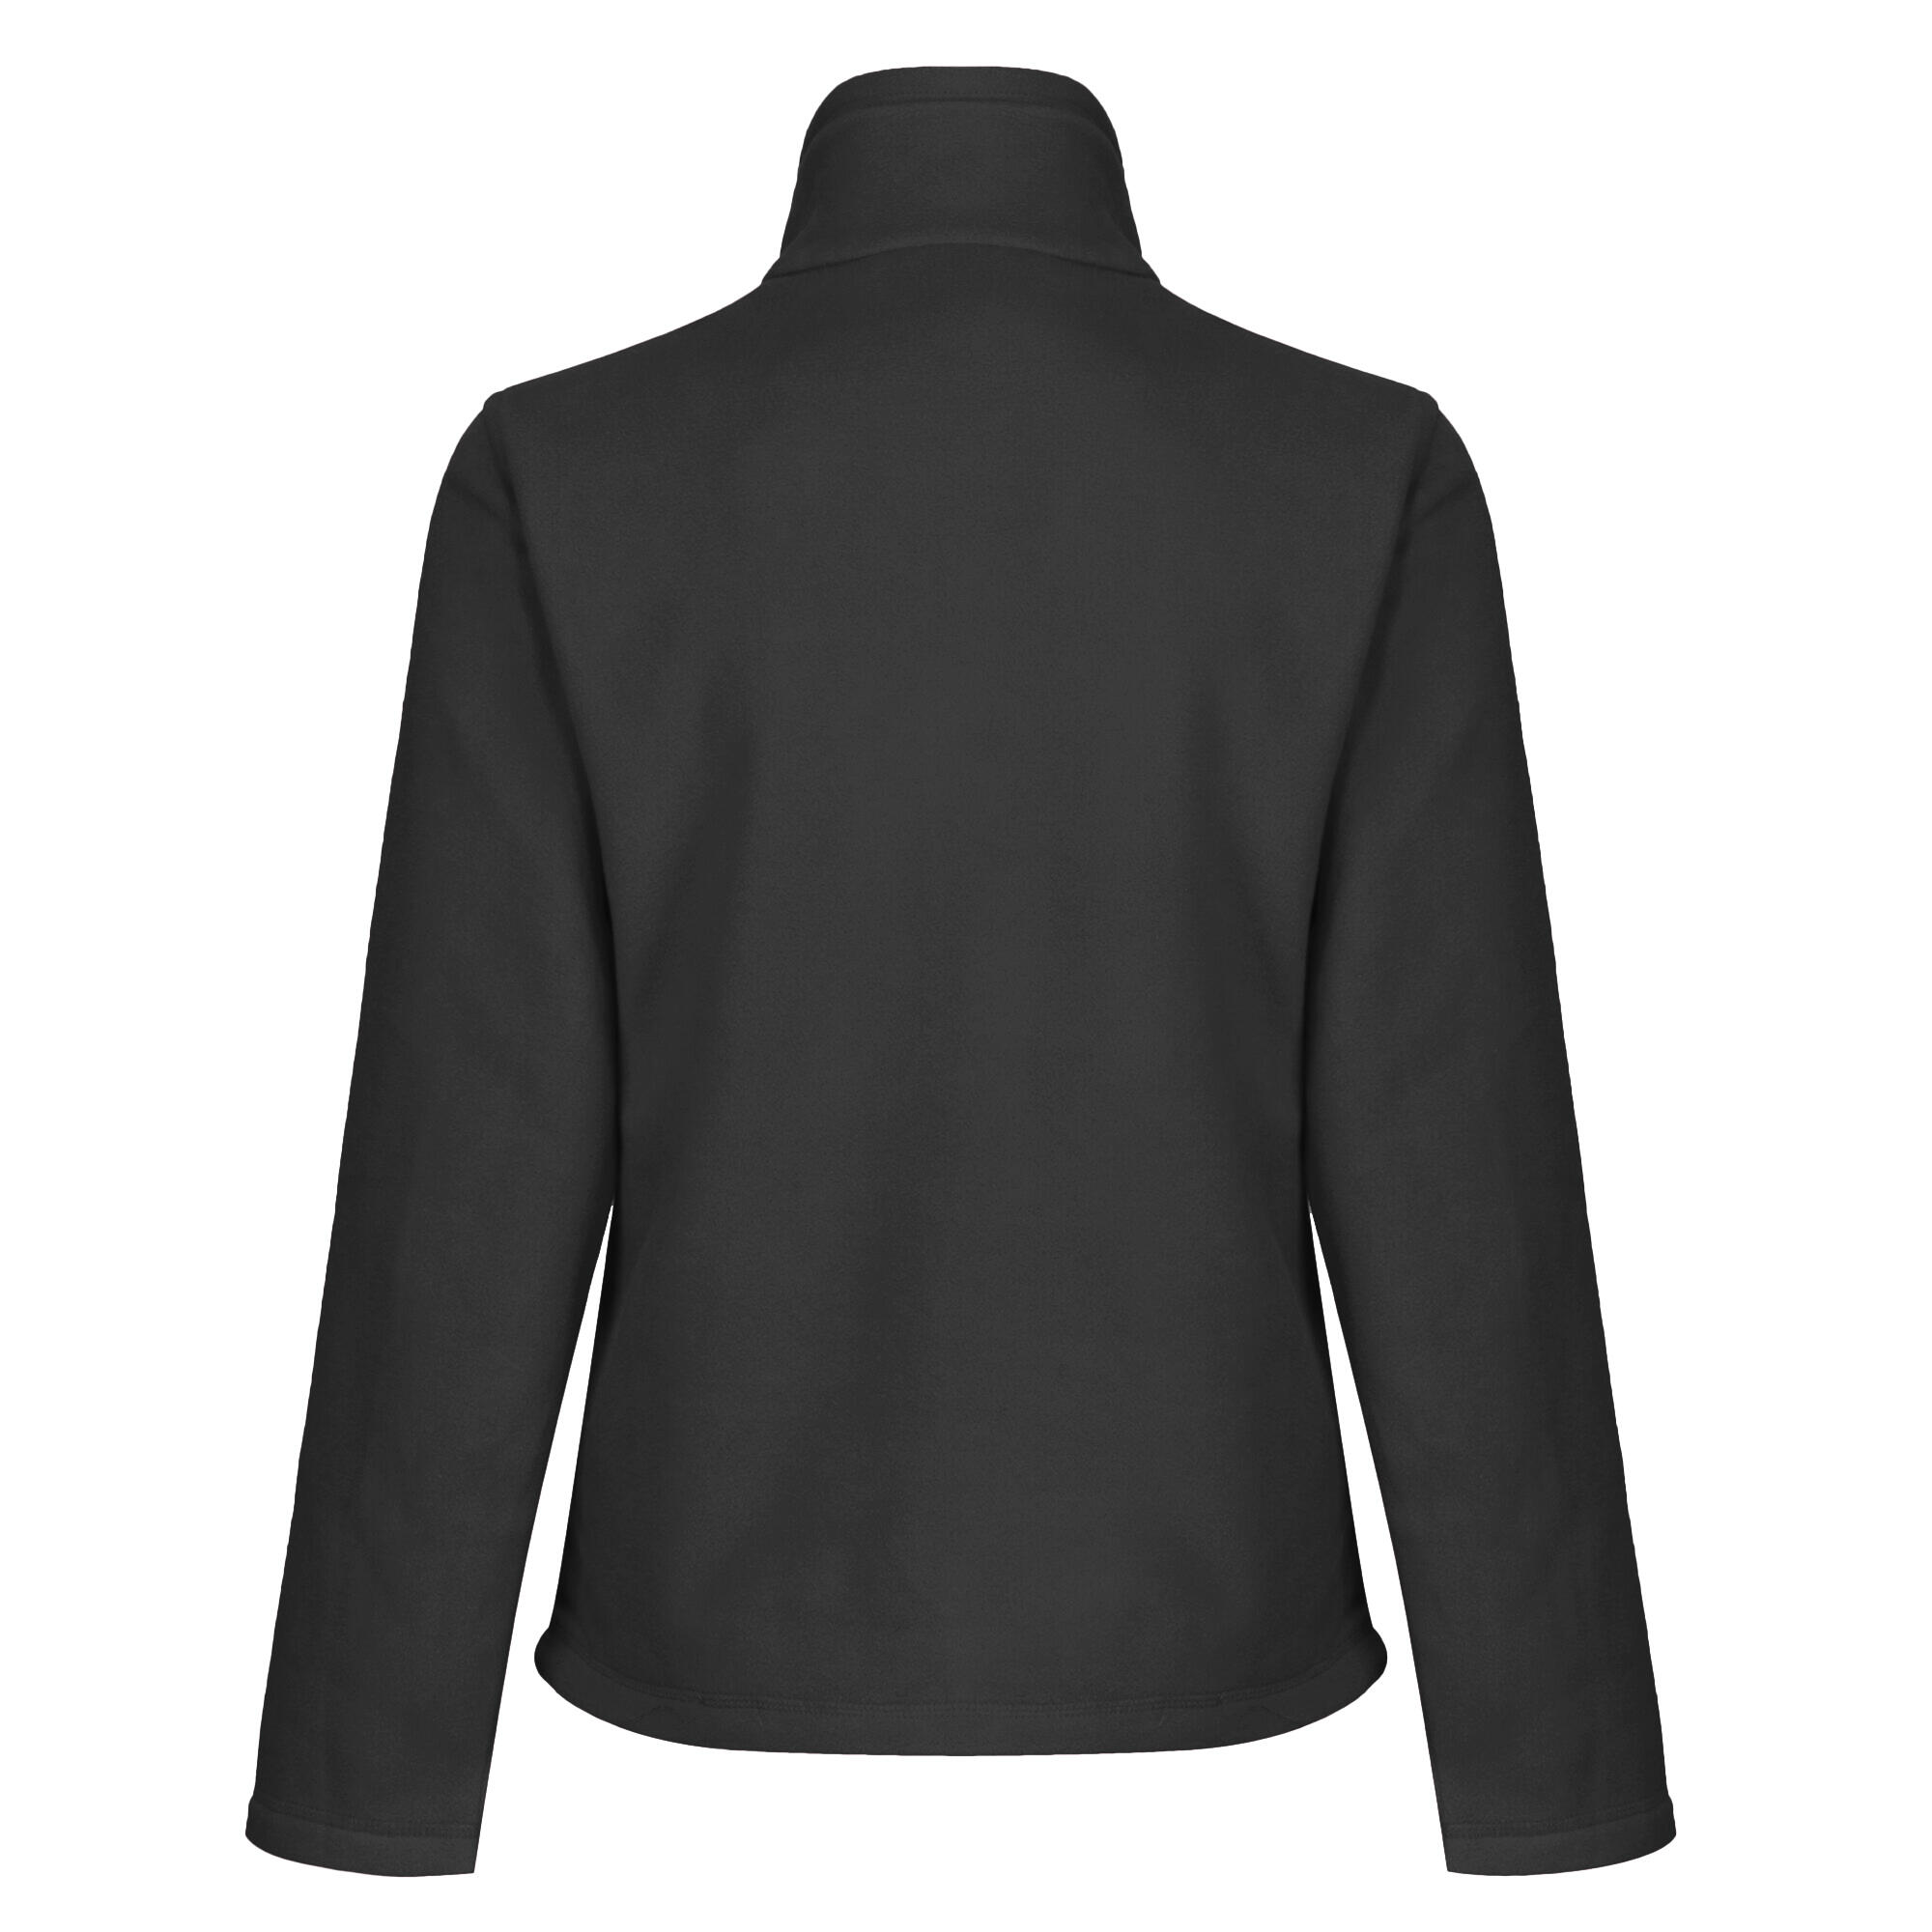 Womens/Ladies FullZip 210 Series Microfleece Jacket (Black) 2/4